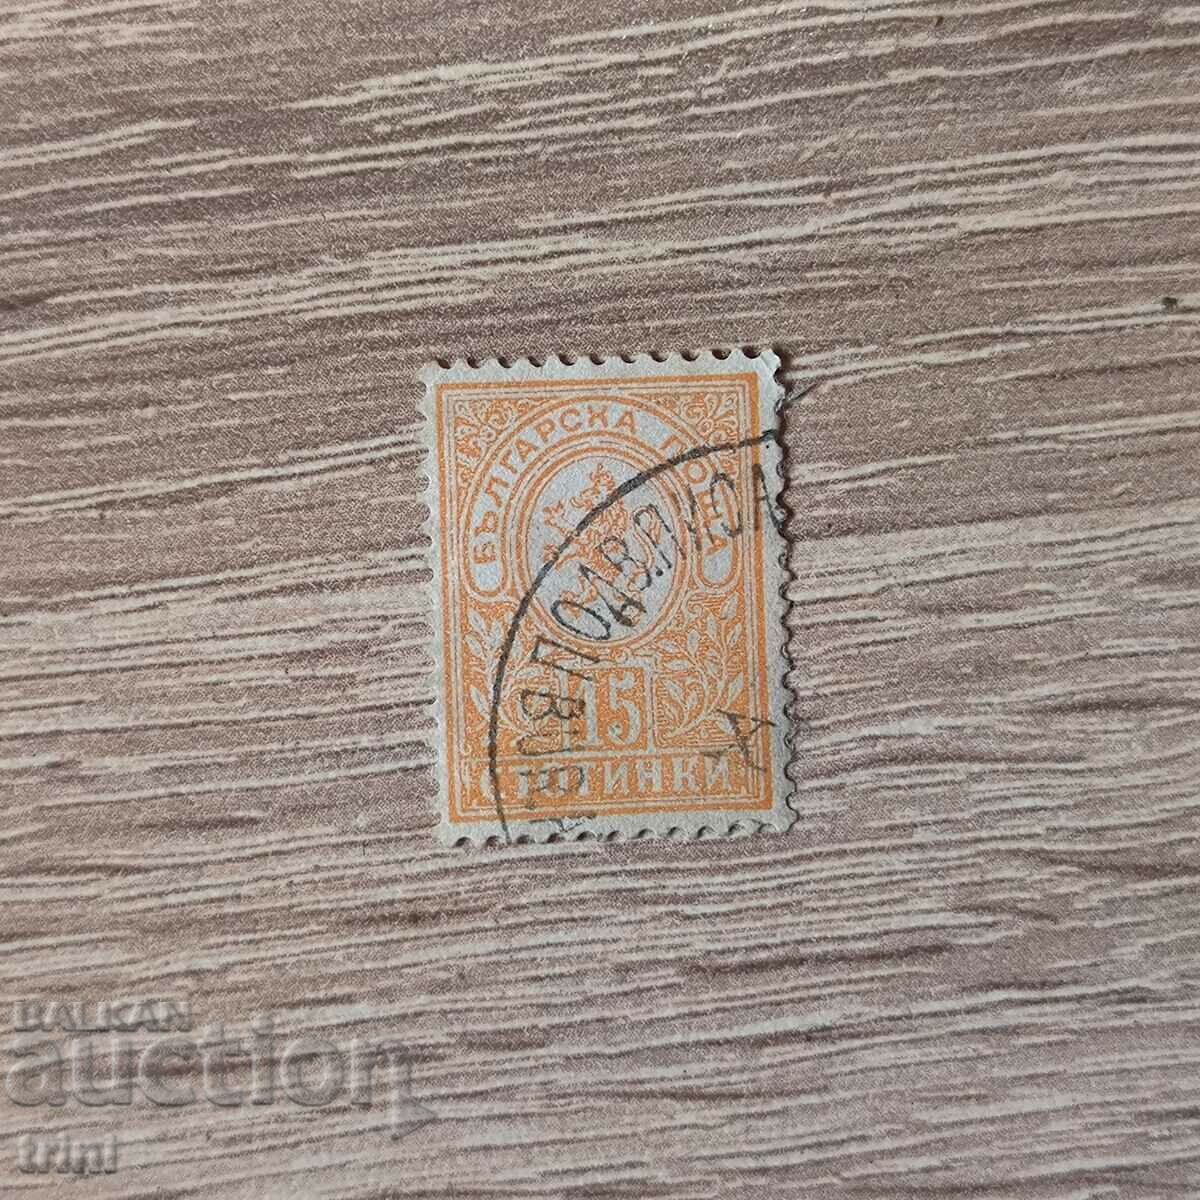 Βουλγαρία Μικρό λιοντάρι 1889 15 σεντς